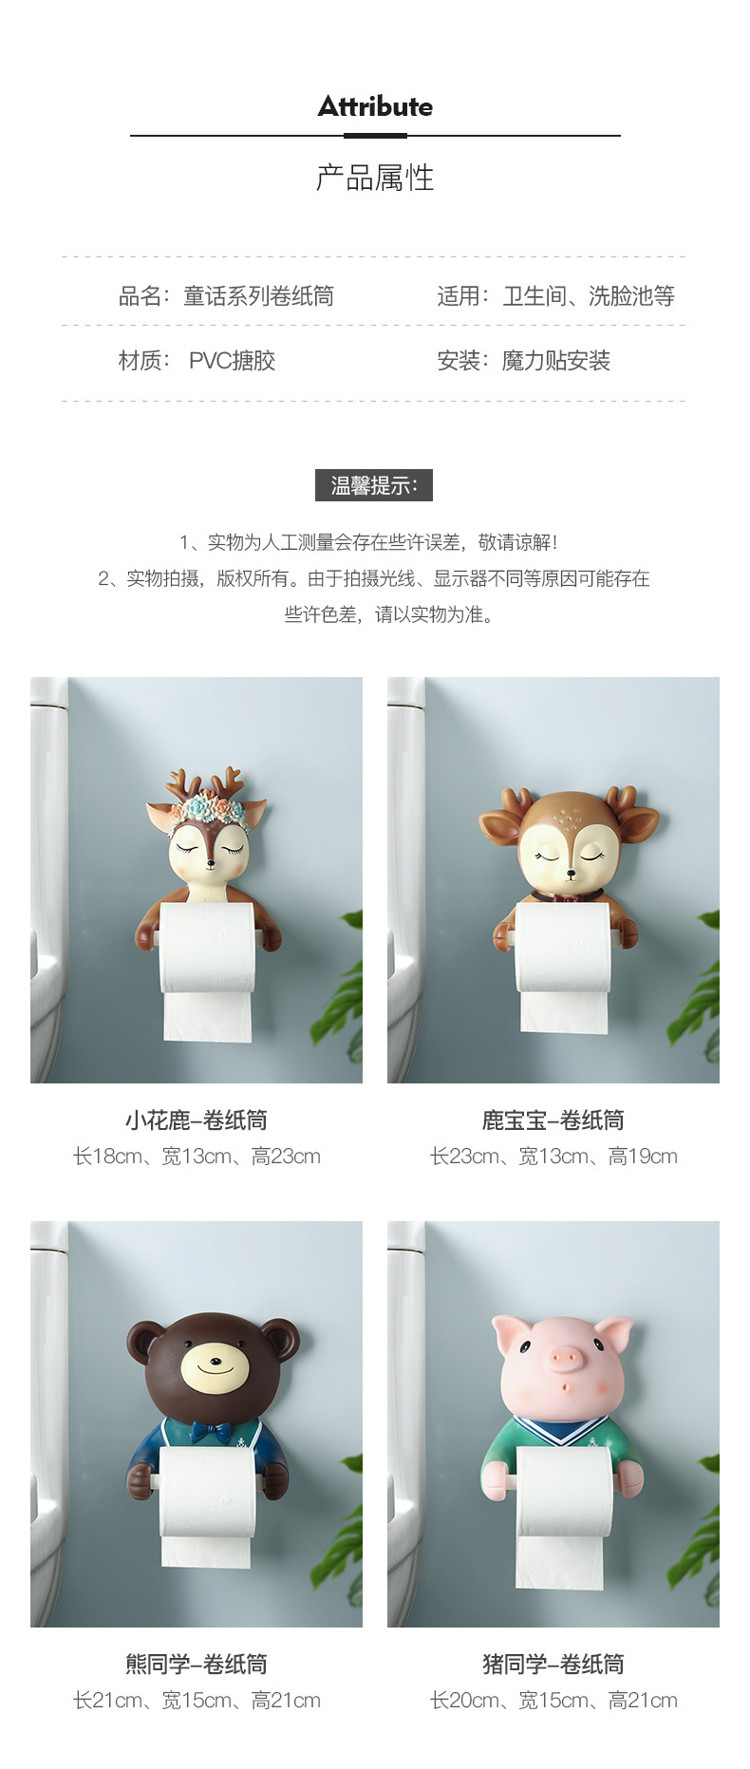 1JC21022 animal toilet paper holders (11)